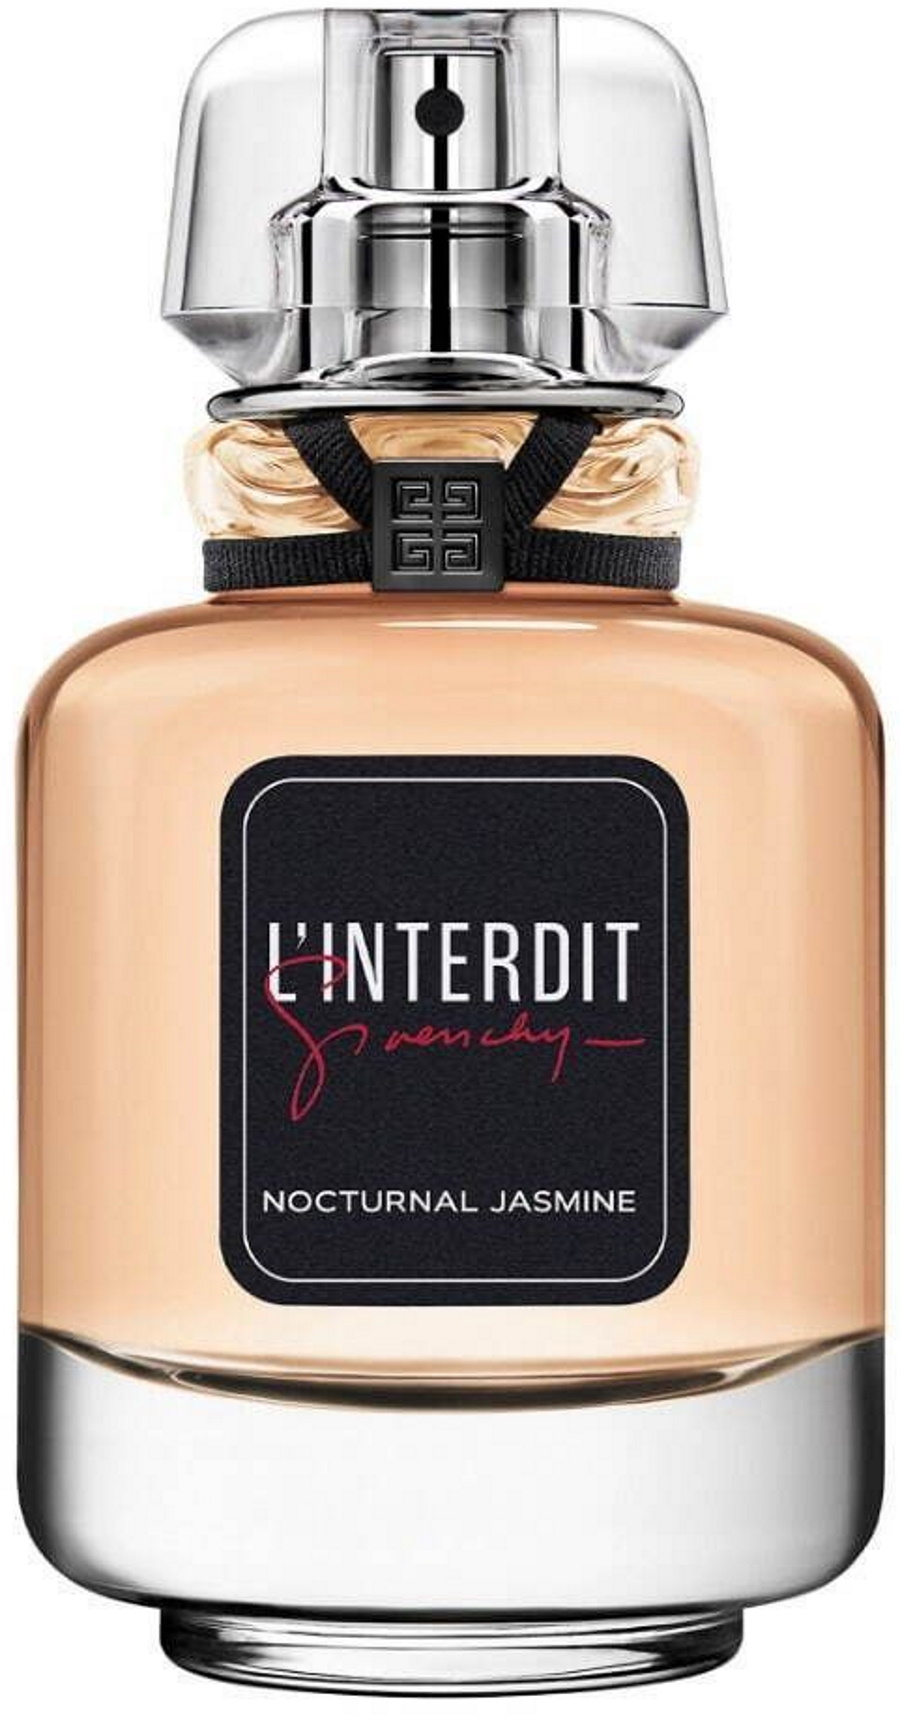 Givenchy - L'Interdit Nocturnal Jasmine parfum 2022